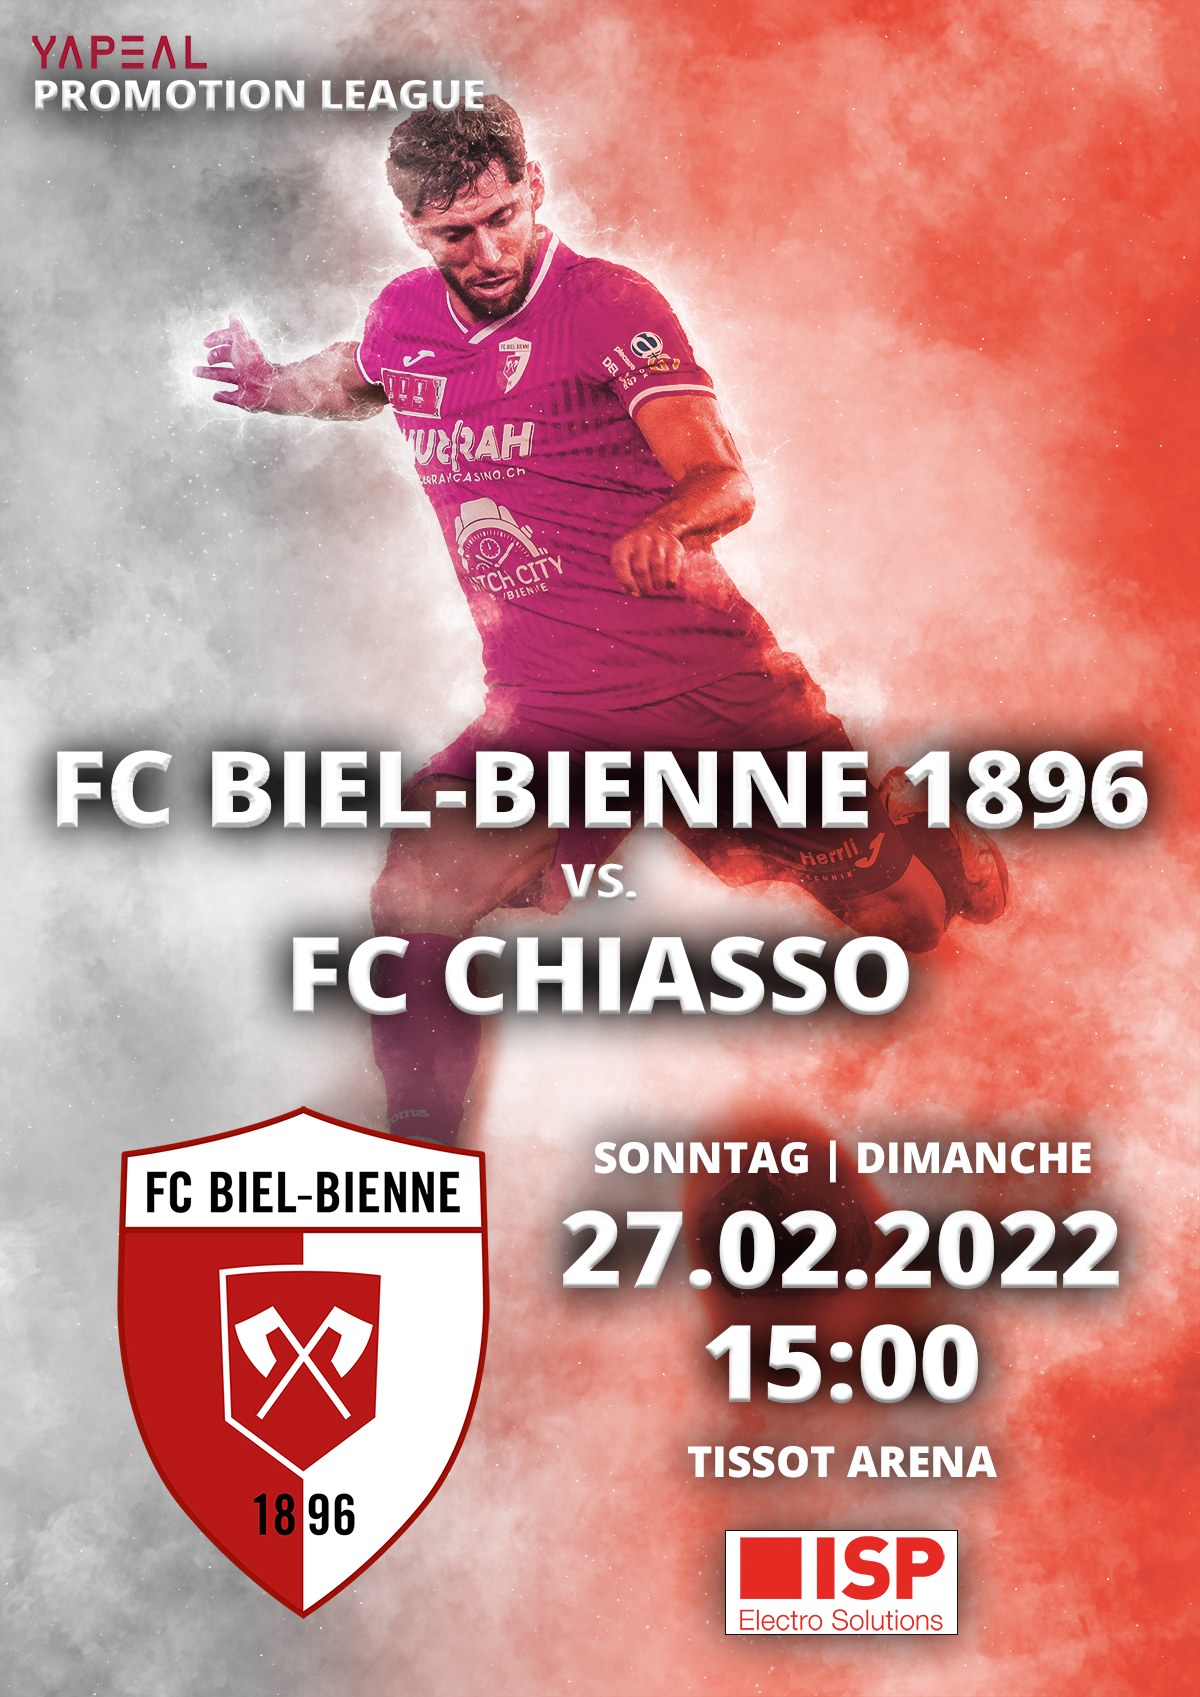 FC Biel-Bienne 1896 vs. FC Chiasso